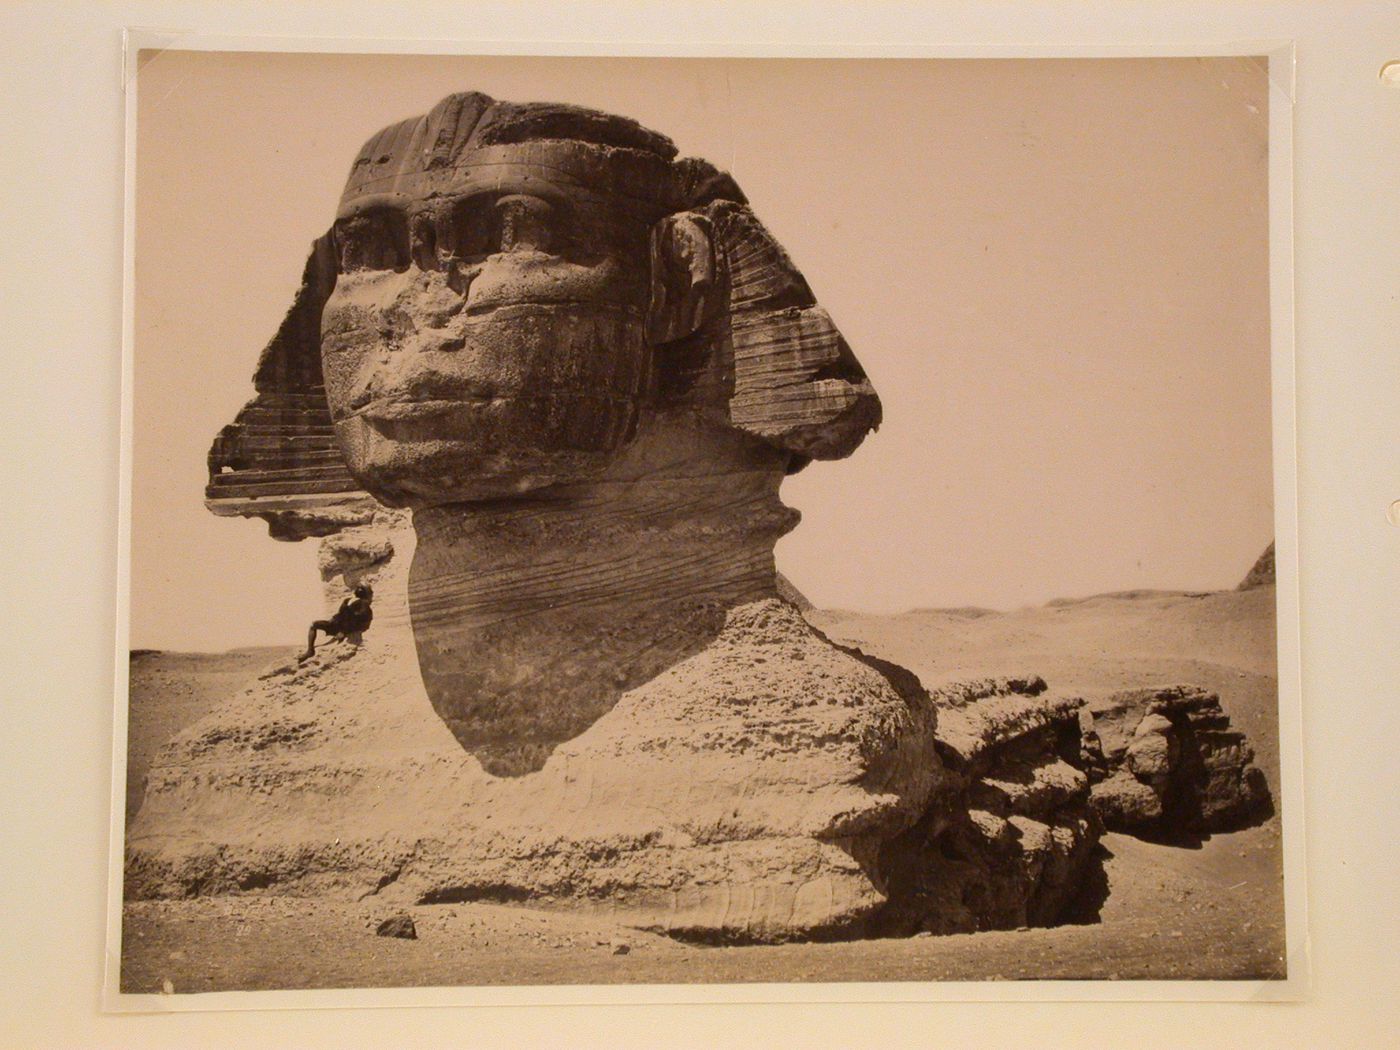 The Sphinx, Giza, Egypt